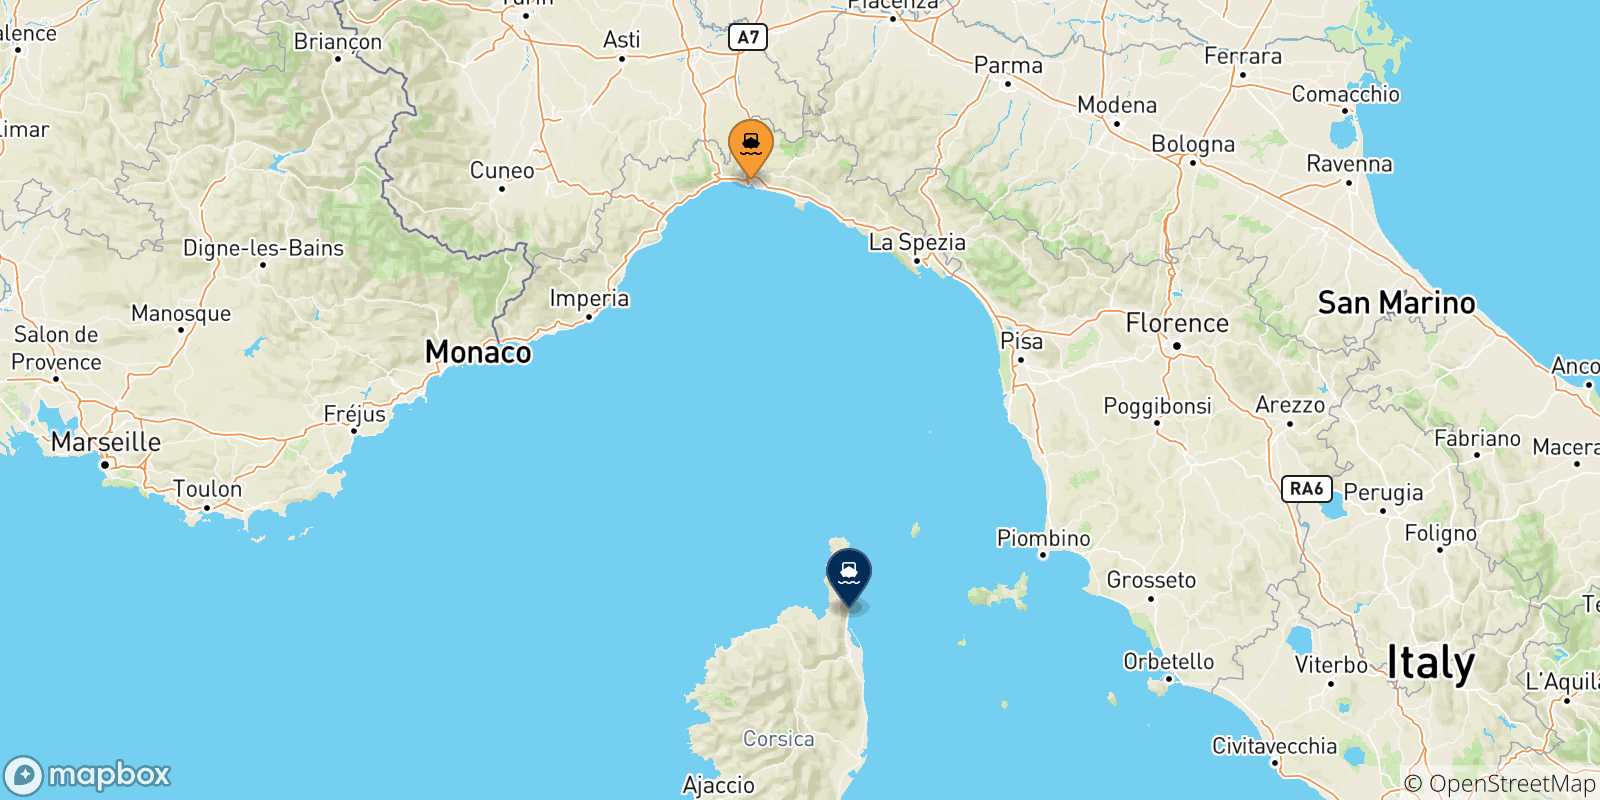 Mappa delle possibili rotte tra Genova e la Corsica